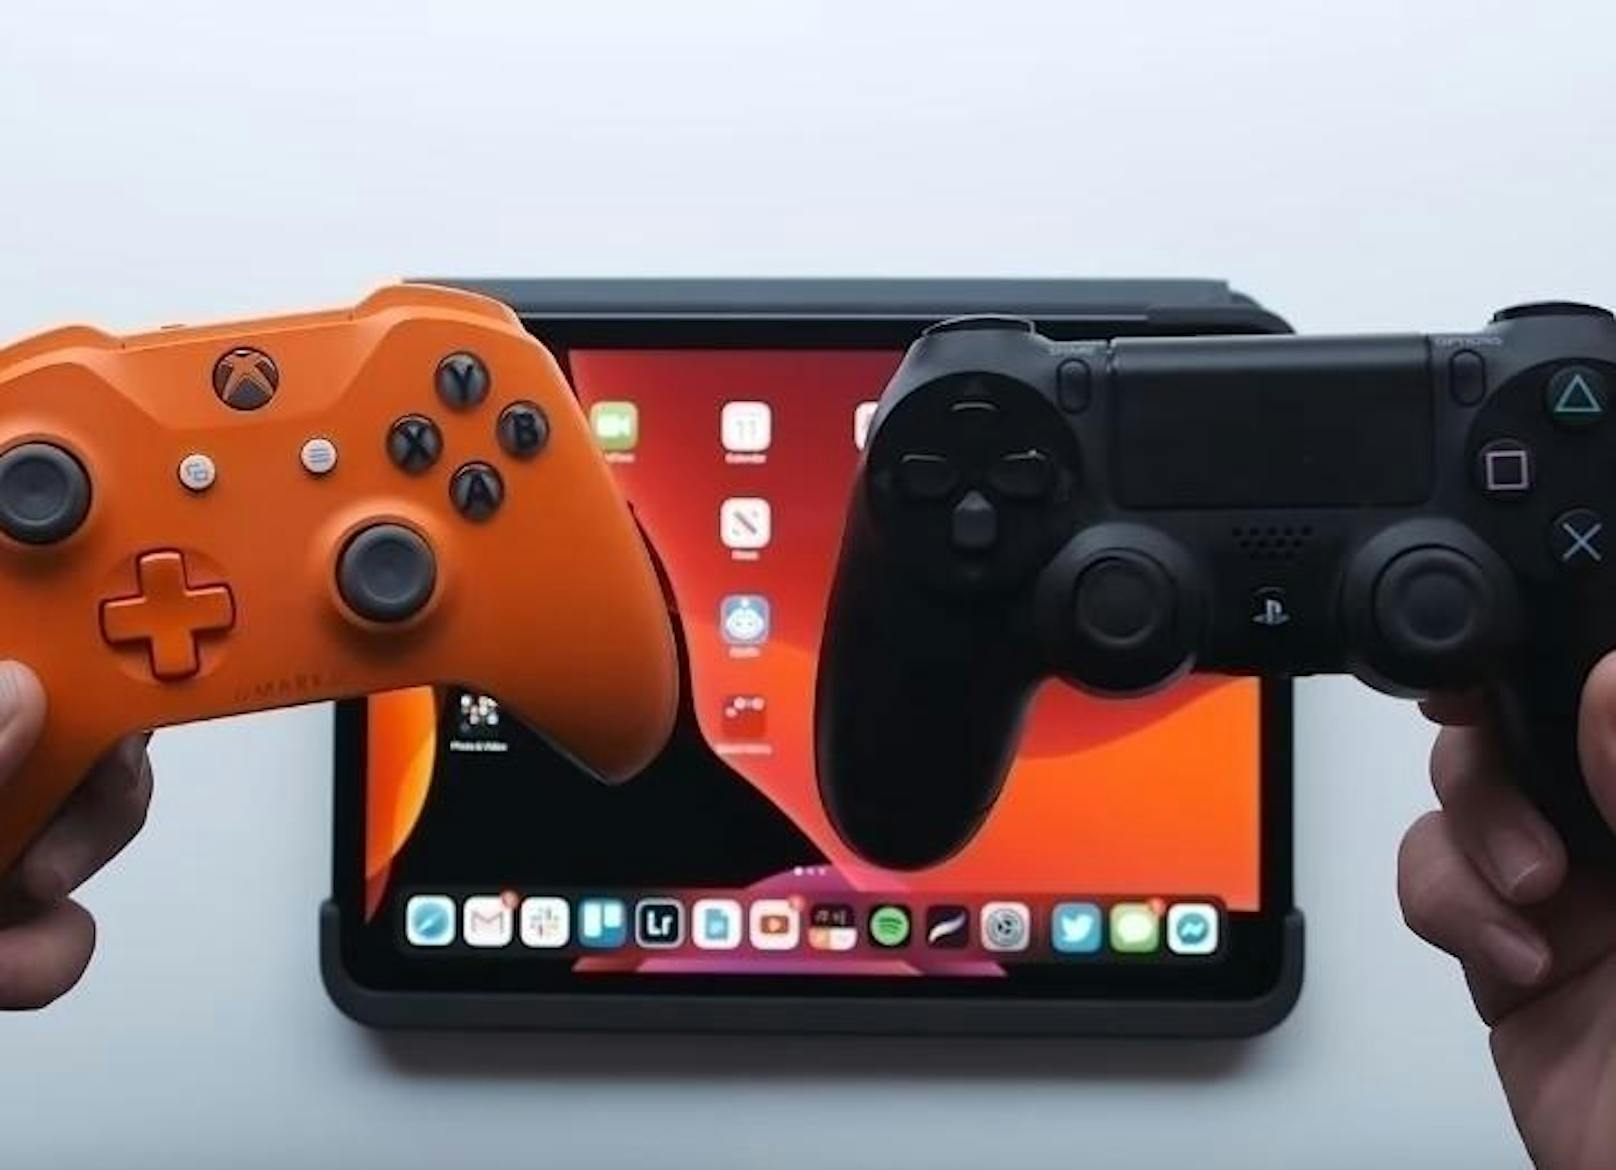 Du kannst auch PS4- und Xbox-One-Controller mit deinem iPhone und iPad nutzen. Damit lassen sich Games einfacher steuern. Spannend dürfte das auch für den Arcade-Dienst sein, den Apple diesen Monat startet. Das Game-Abo kostet 5 Euro pro Monat.